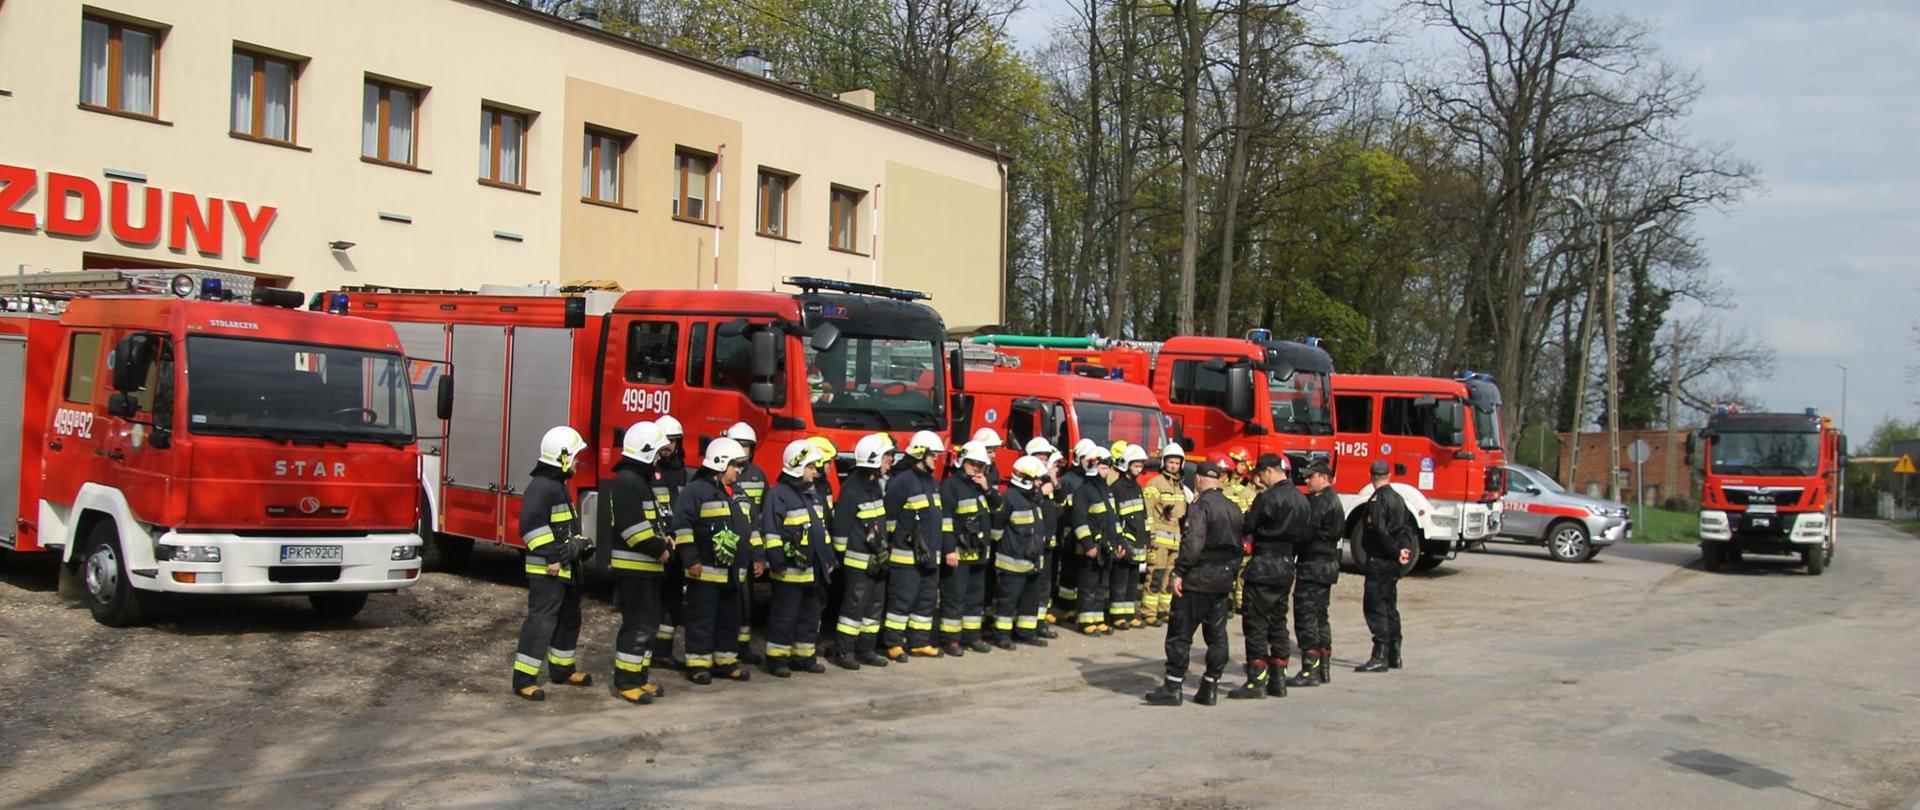 Zdjęcie przedstawia pododdział strażaków stojący przed samochodami bojowymi na tle budynku remizy OSP Zduny, przed strażakami stoją oficerowie Państwowej Straży pożarnej i prowadzą odprawę przed ćwiczeniami.